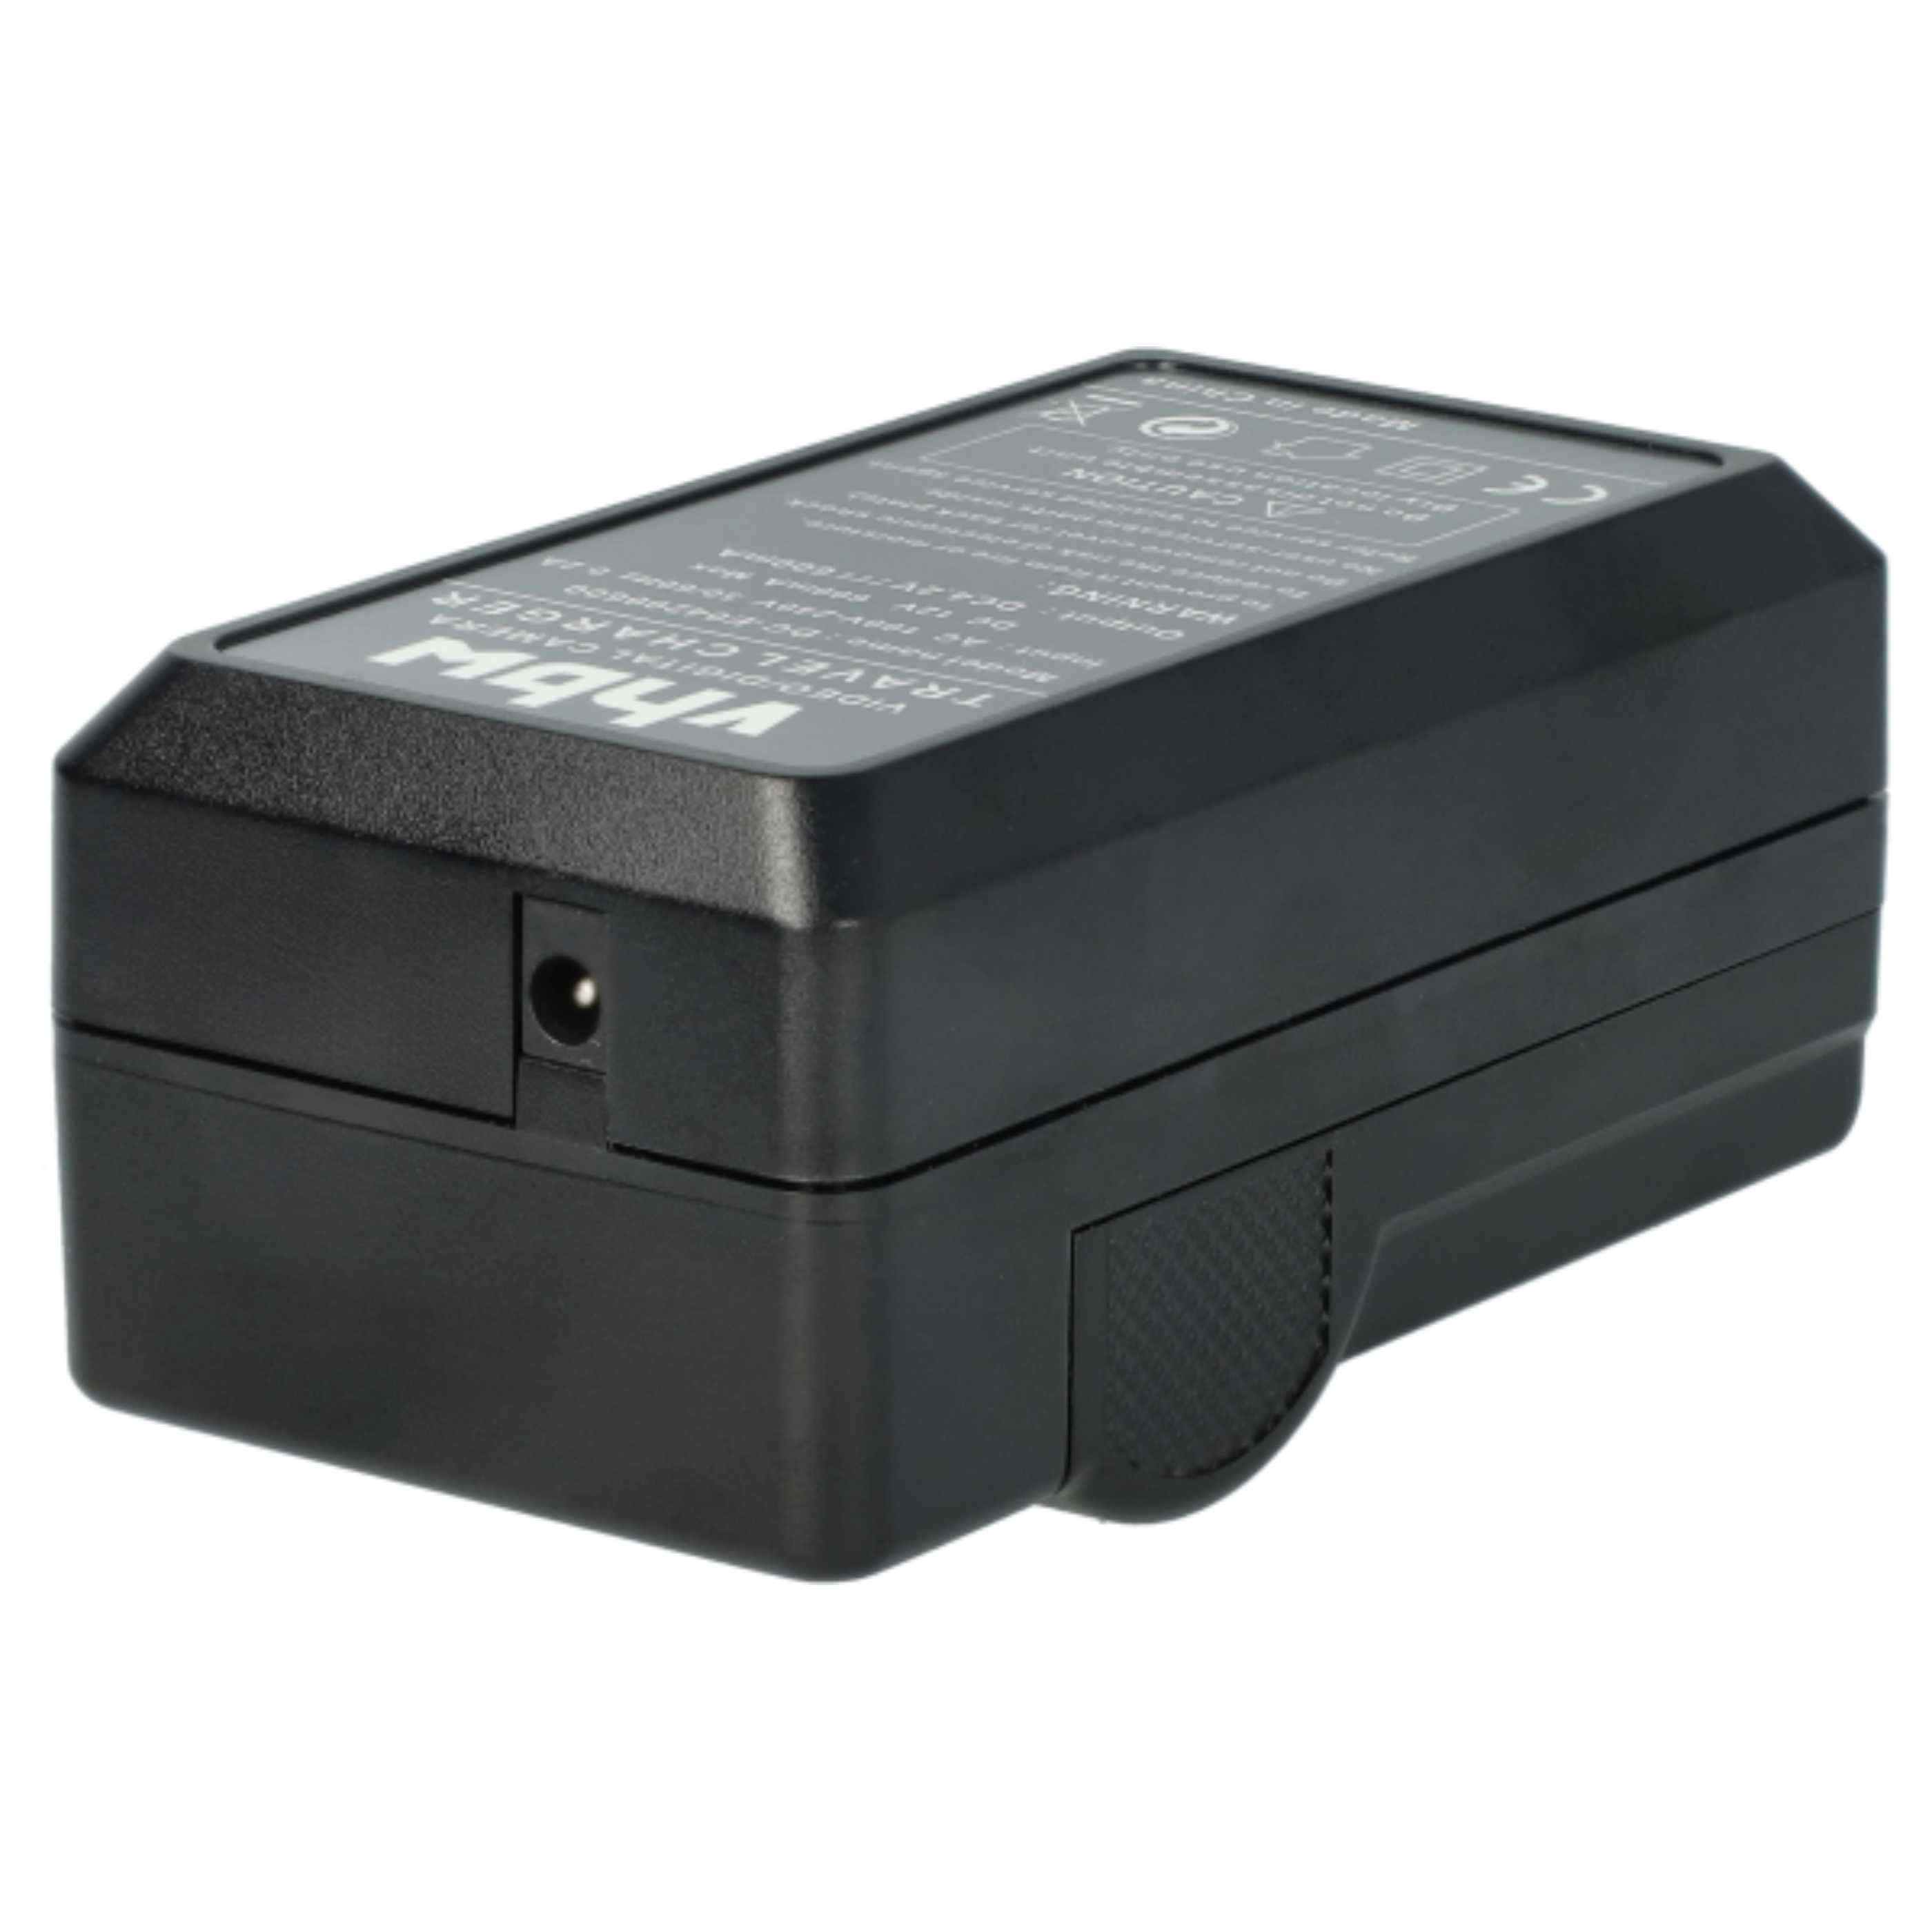 Ładowarka do aparatu General Imaging GB-20 i innych - ładowarka akumulatora 0,6 A, 4,2 V